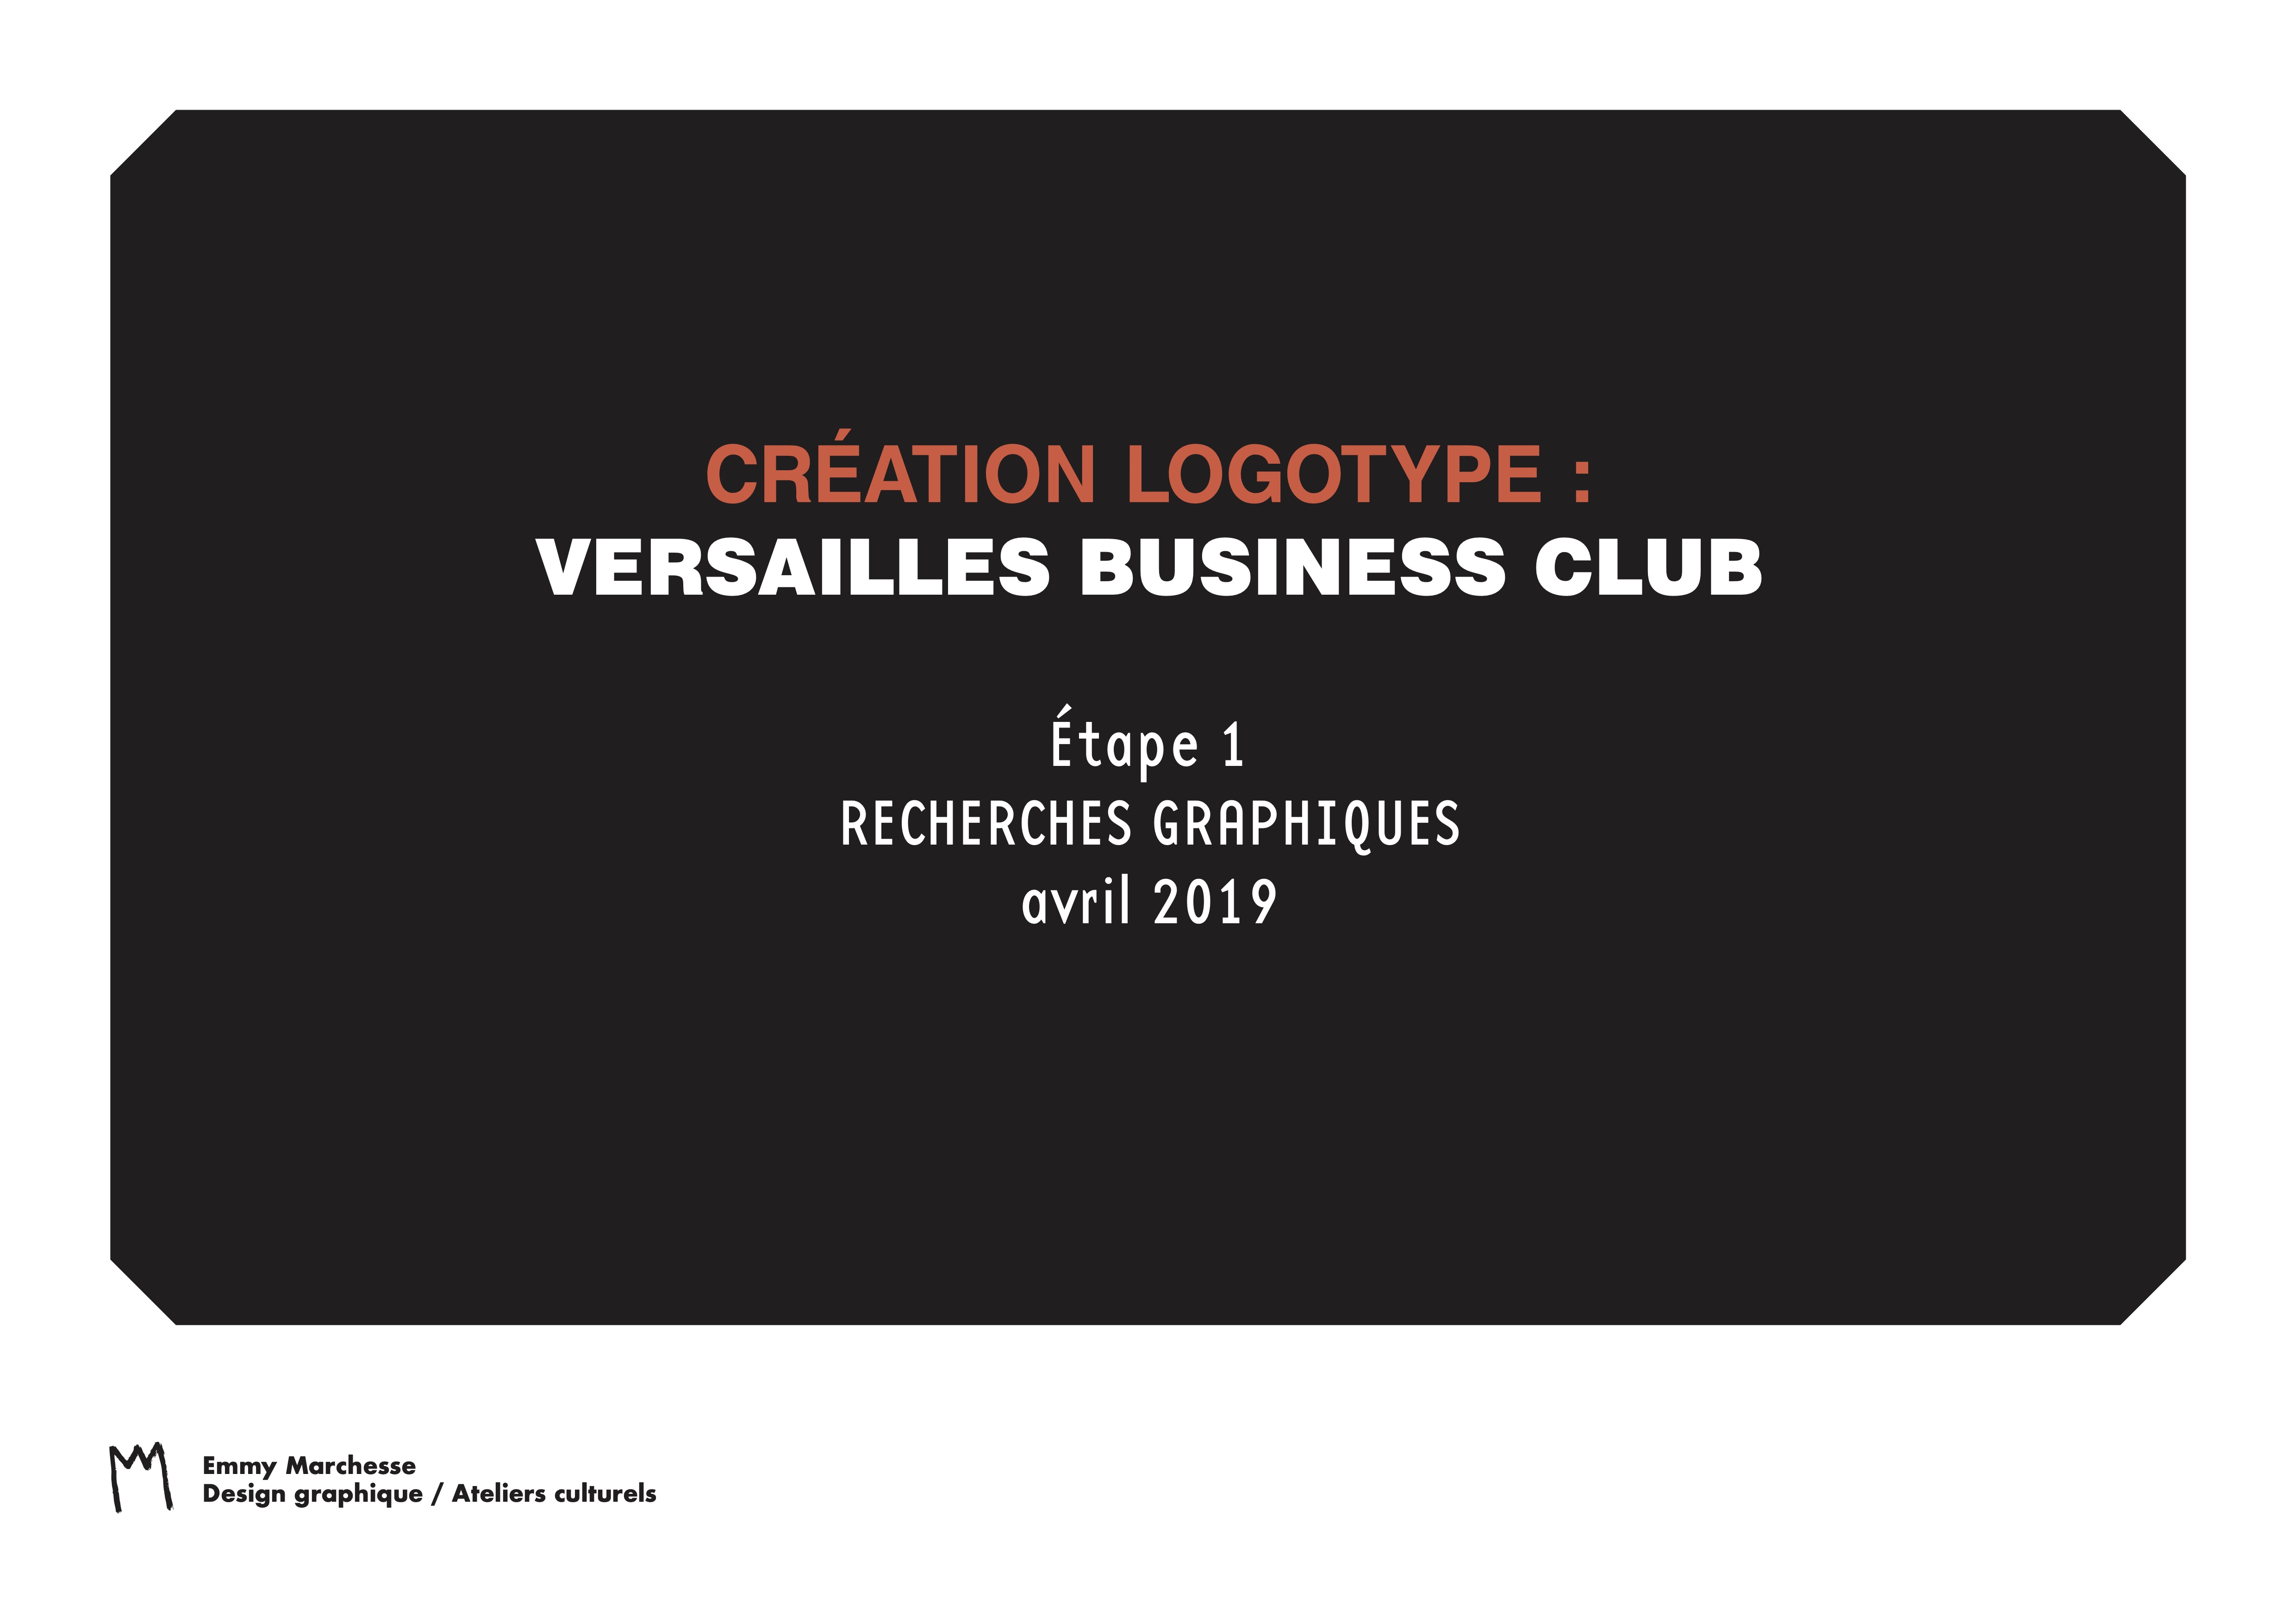 emmymarchesse Versailles Business Club